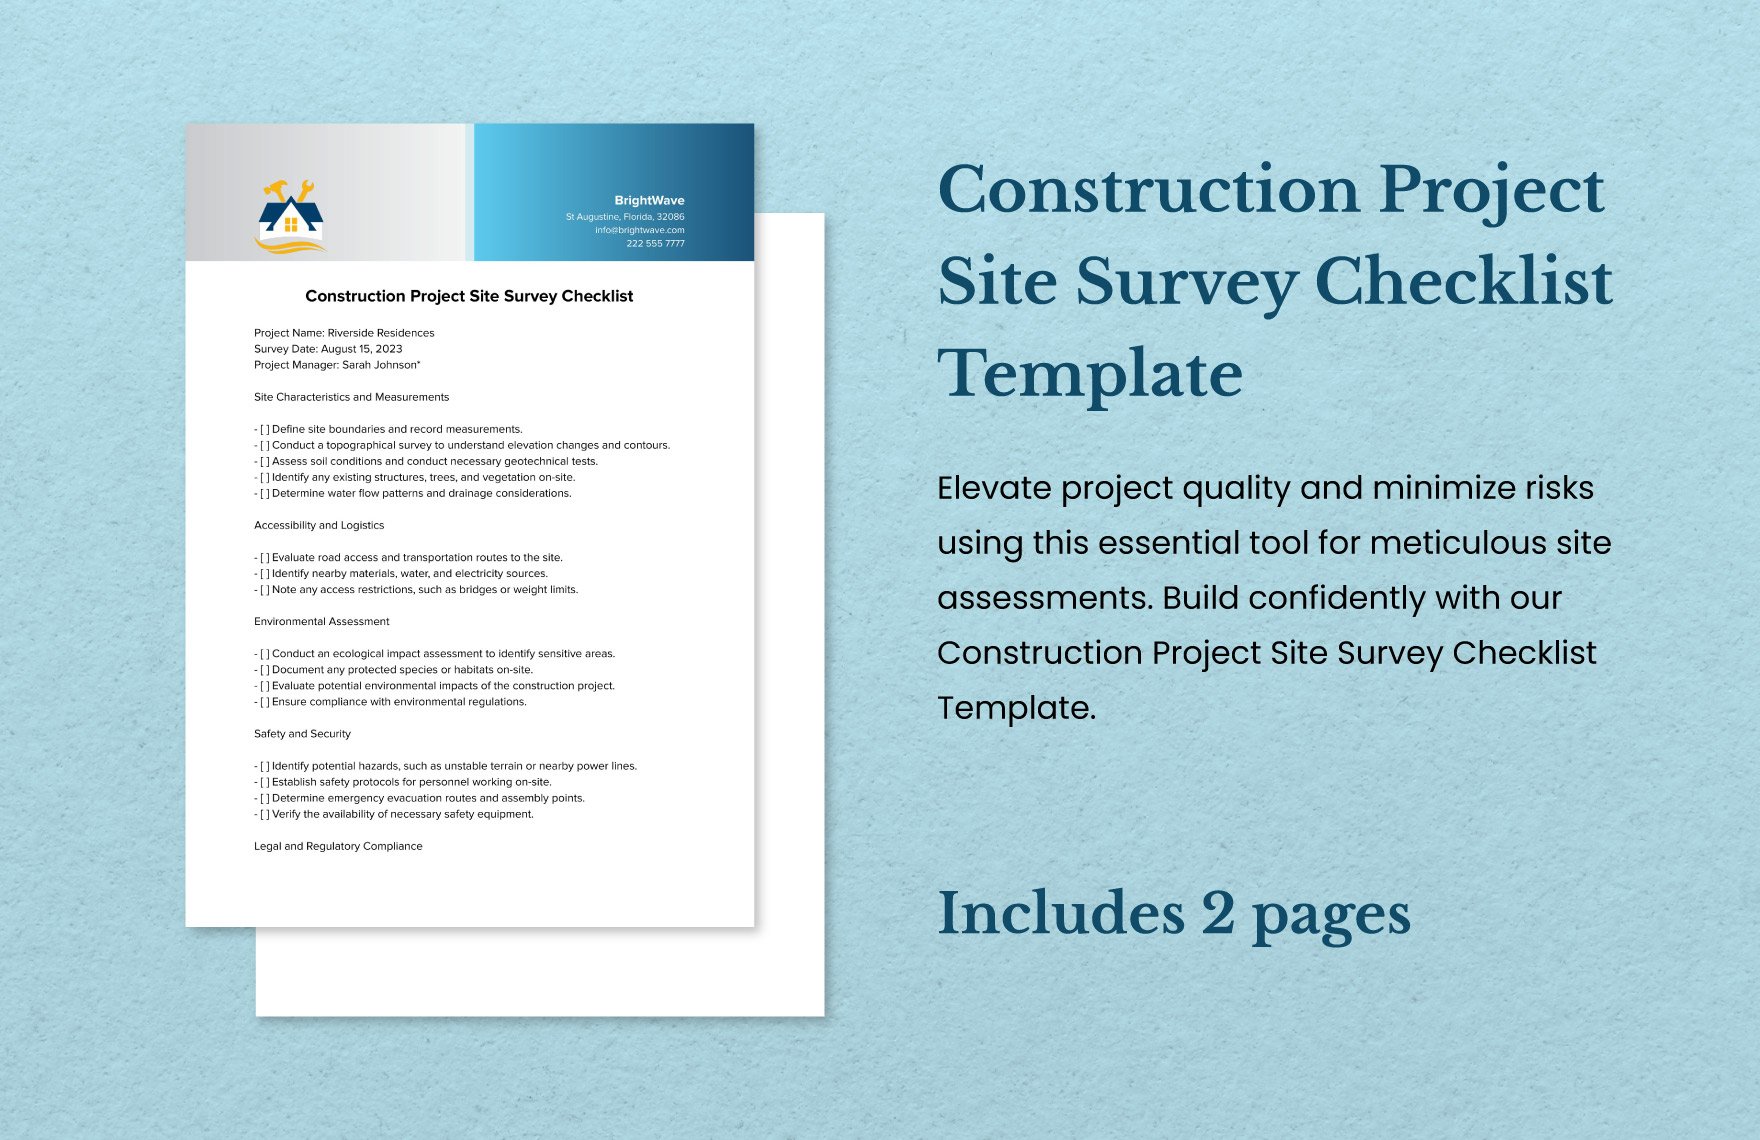 Construction Project Site Survey Checklist Template